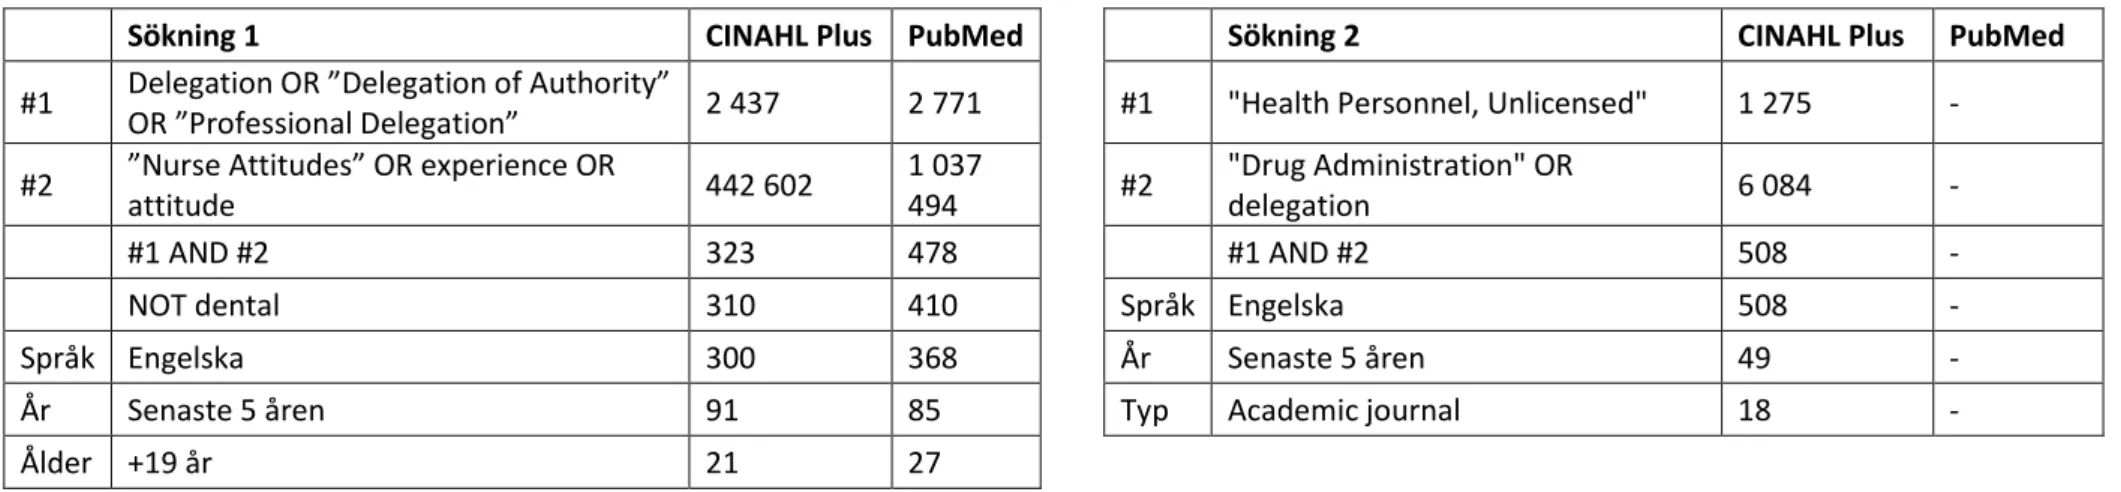 Tabell 1: Sökträffar för sökning 1 och 2 i CINAHL Plus och PubMed (180124). Tillvägagångssättet i tabellen enligt Karlsson (2017, p